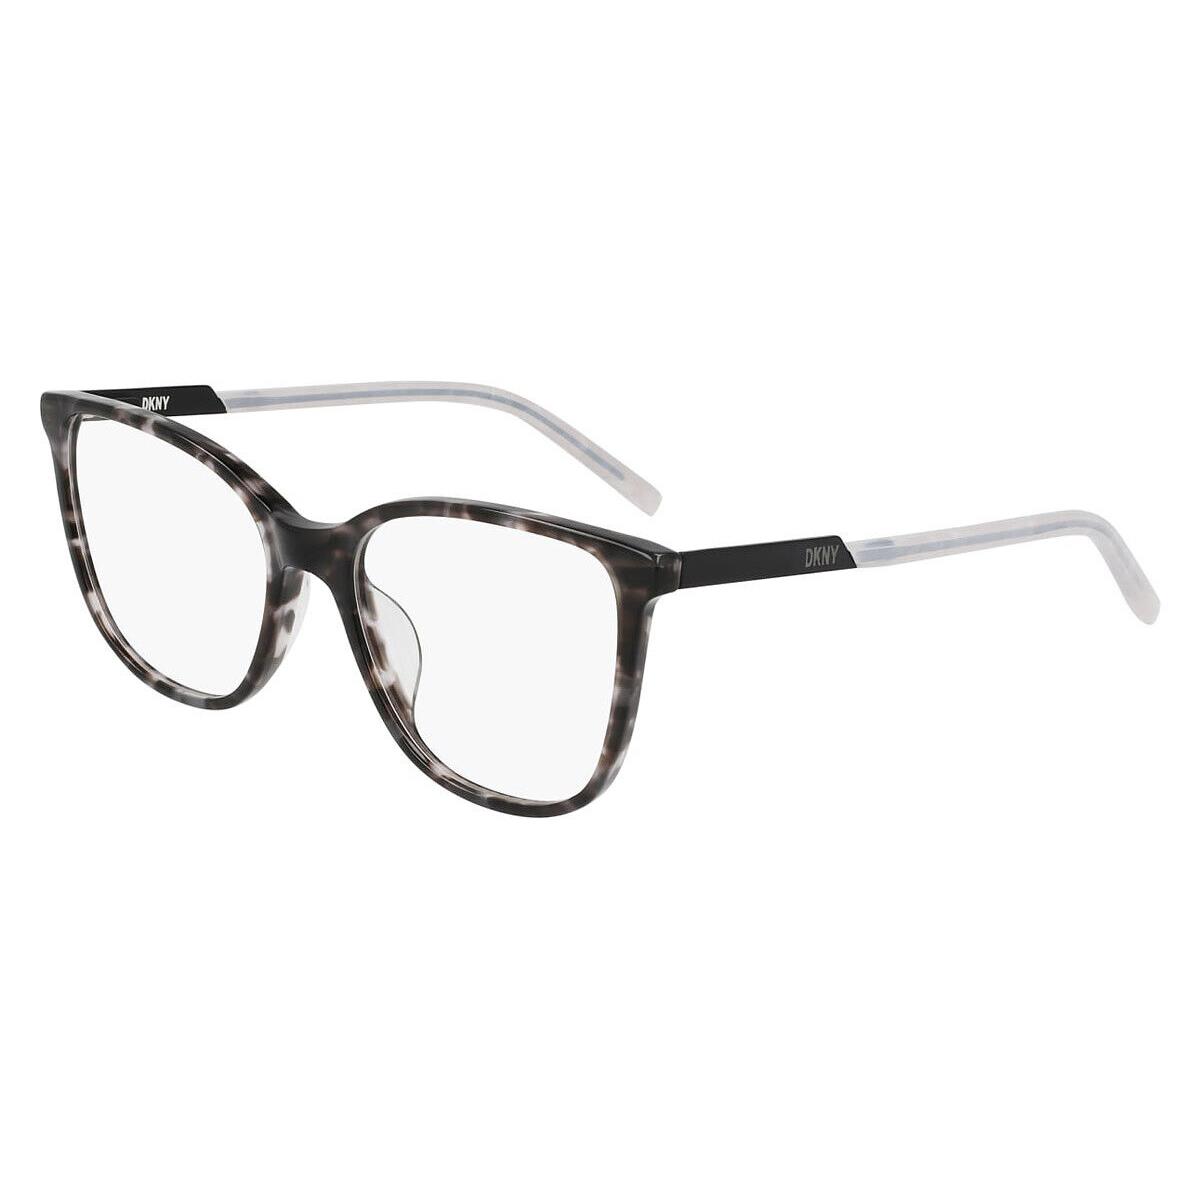 Dkny DK5066 Eyeglasses Women Black Tortoise 52mm